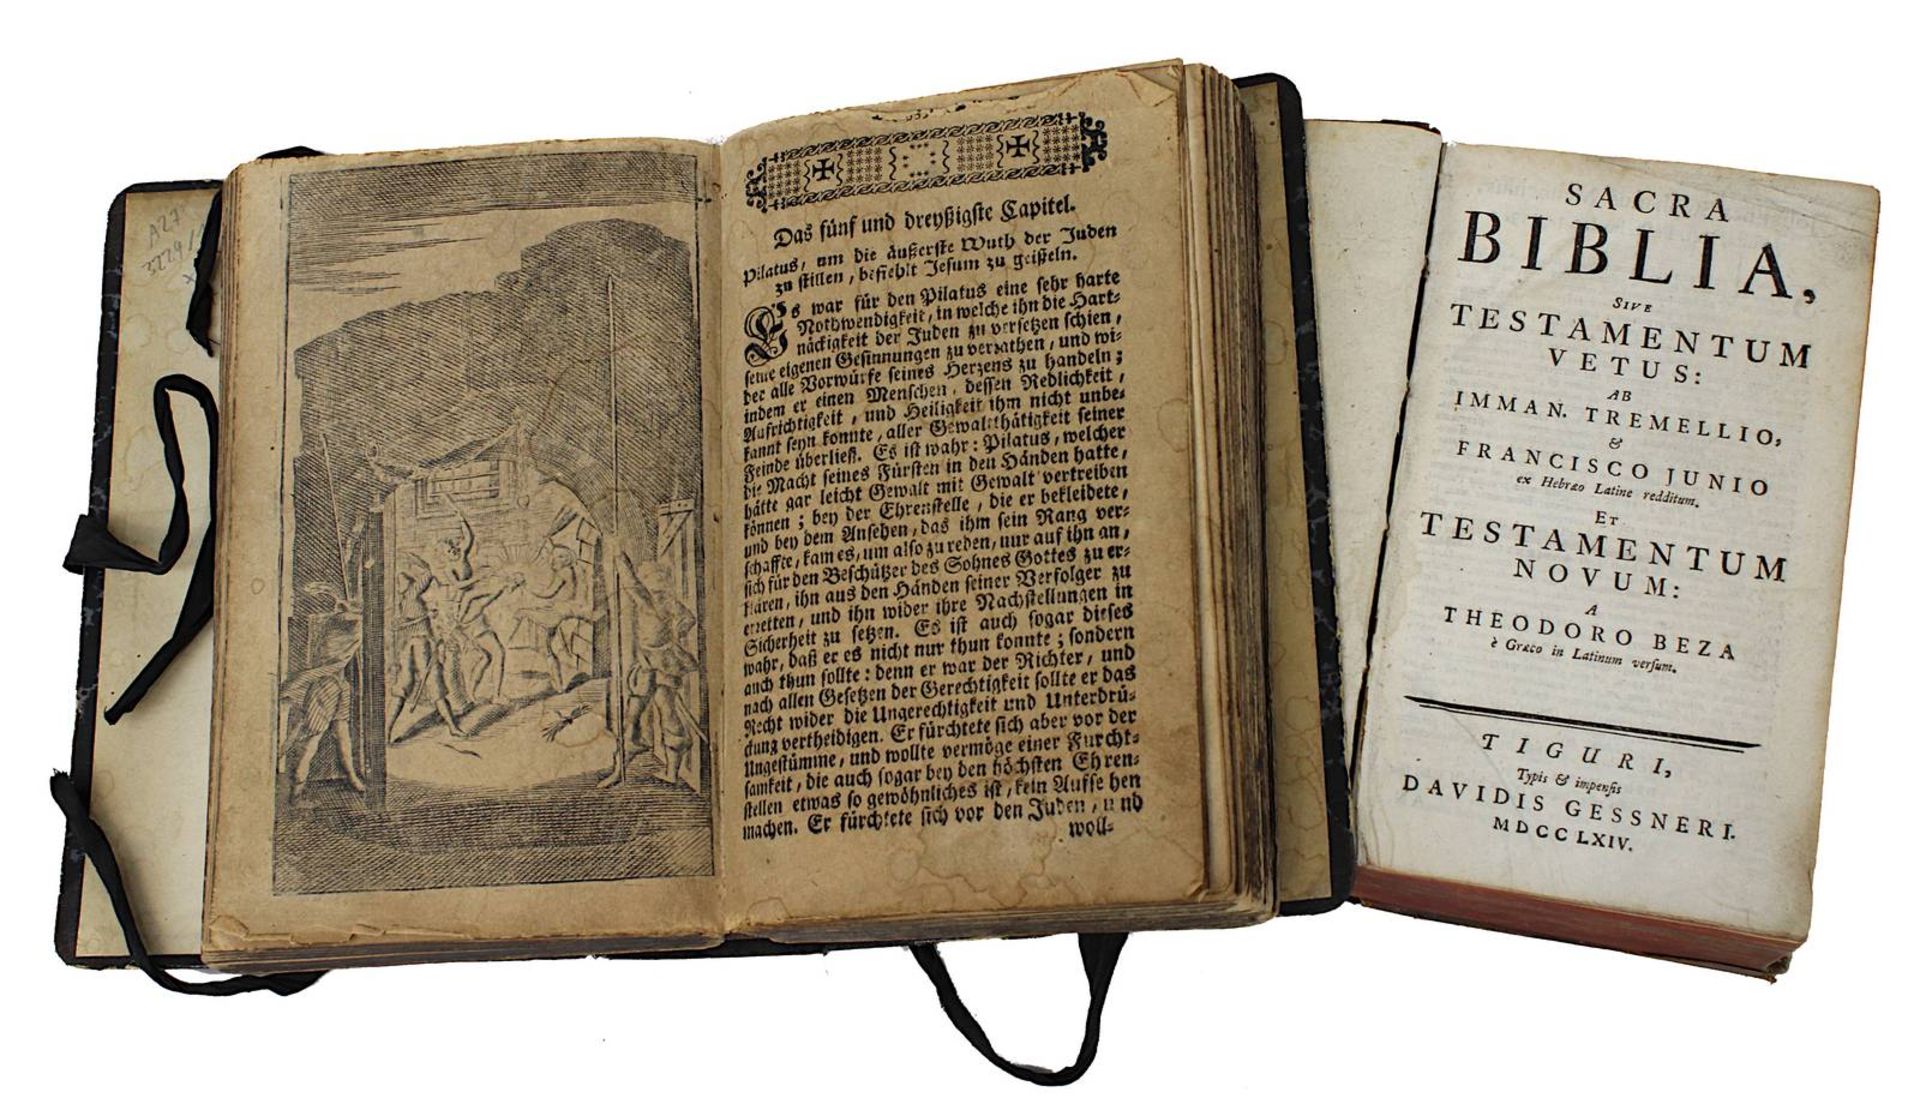 Zwei Bücher zu Religion: "Sacra Biblia, sive Testamentum Vetus ... Testamentum Novum ...", Tiguri